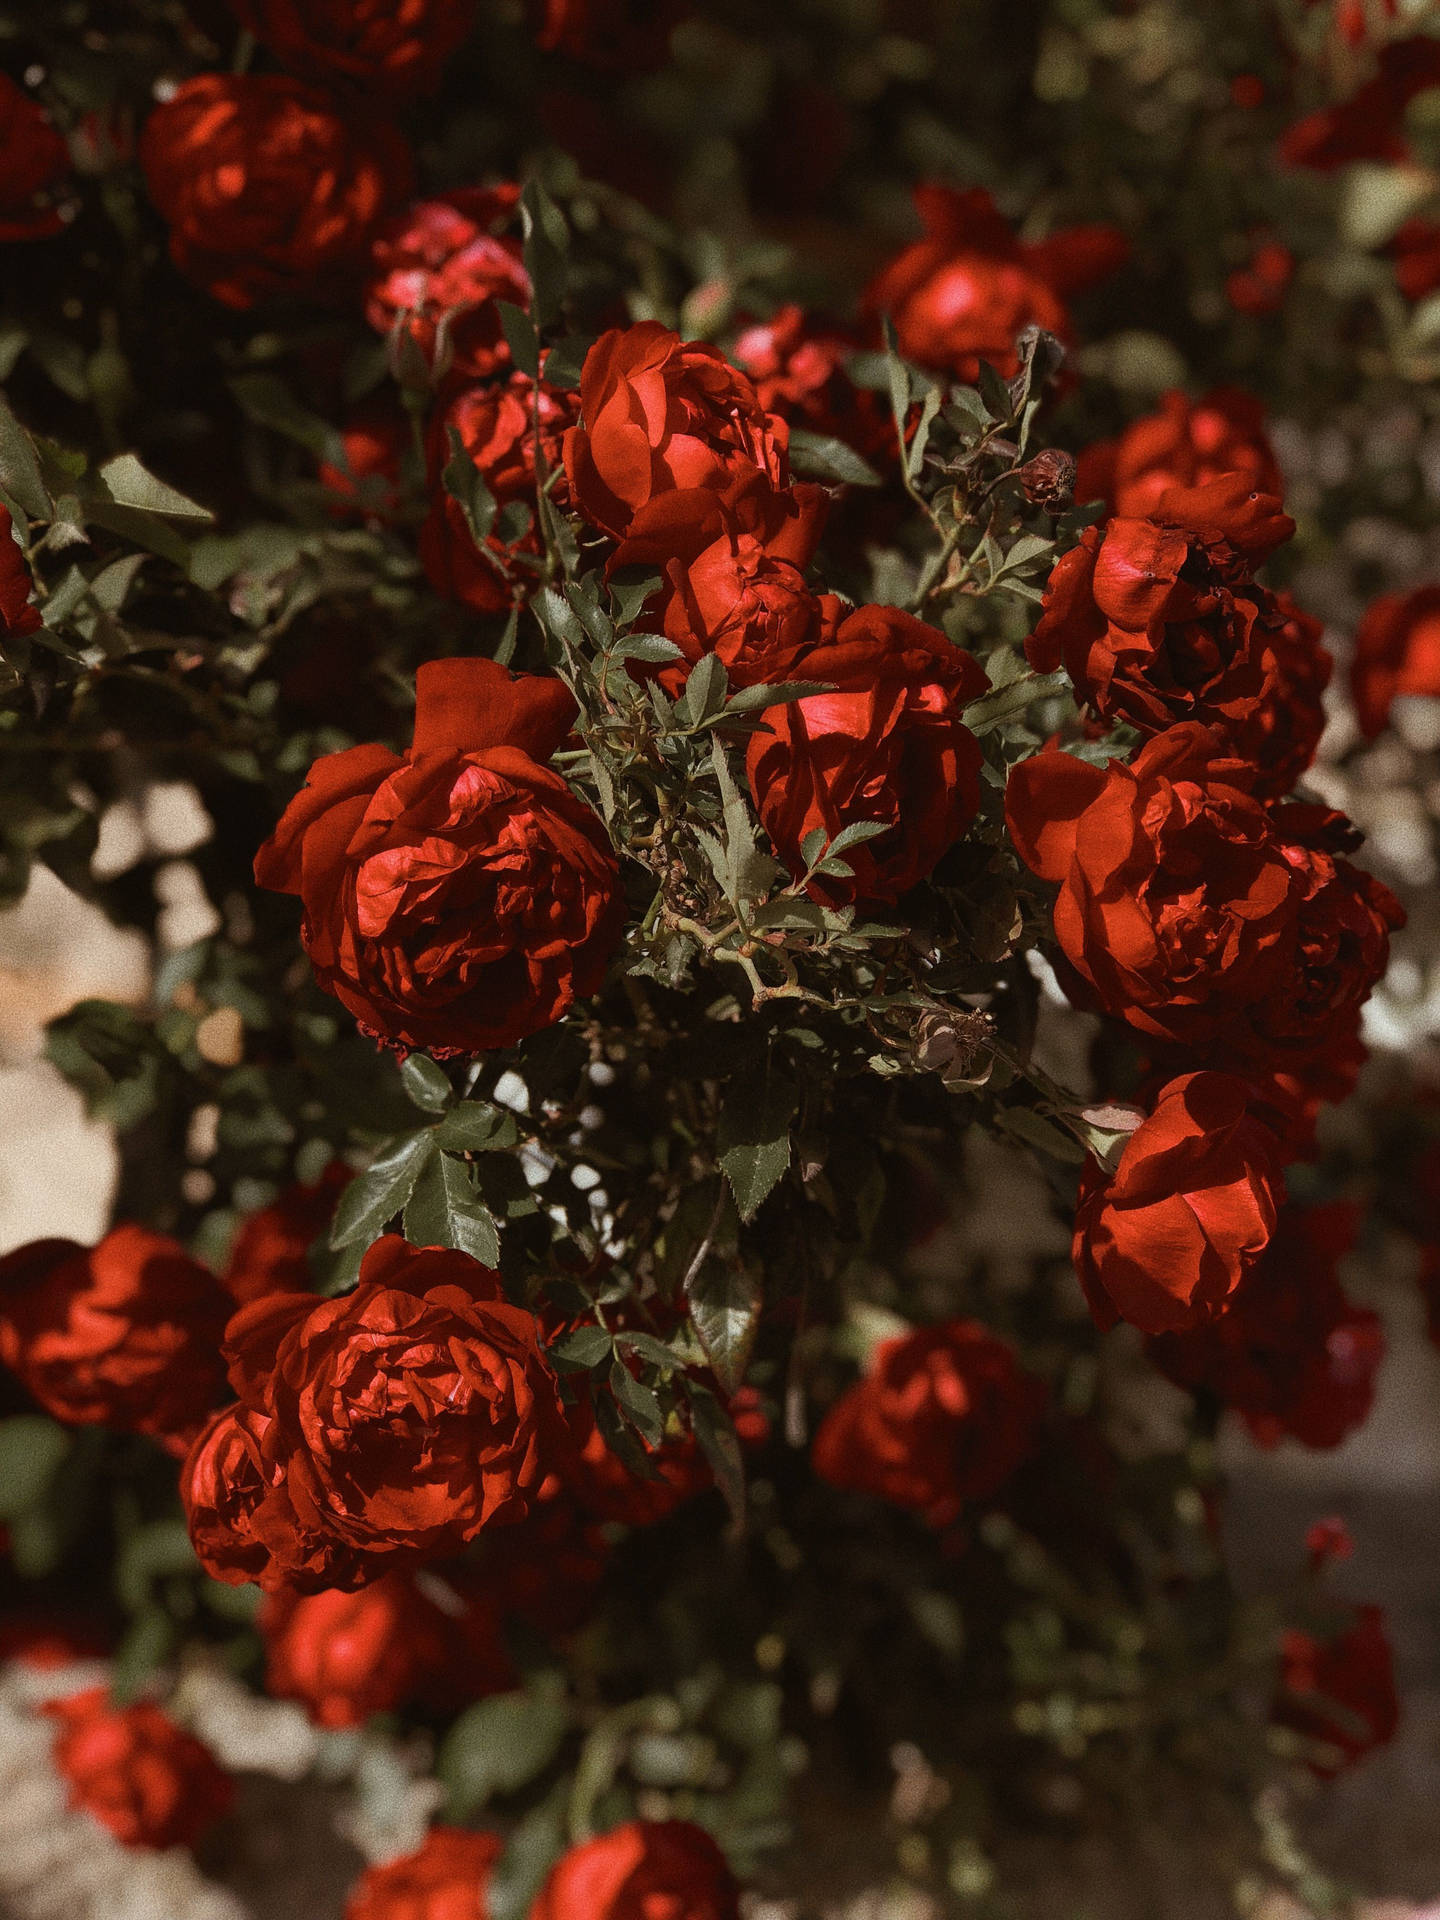 Dark Moody Red Roses